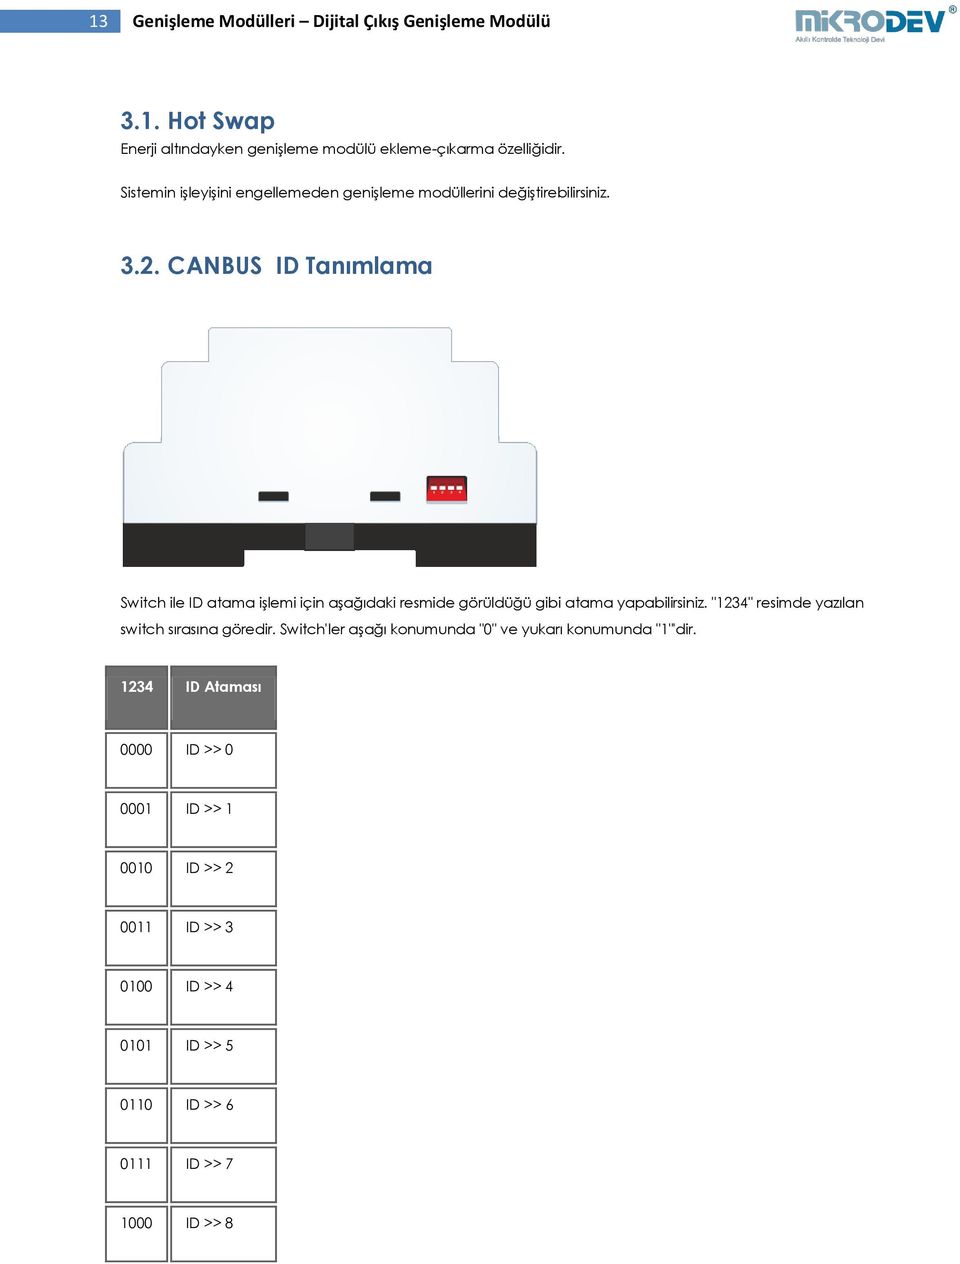 CANBUS ID Tanımlama Switch ile ID atama işlemi için aşağıdaki resmide görüldüğü gibi atama yapabilirsiniz.